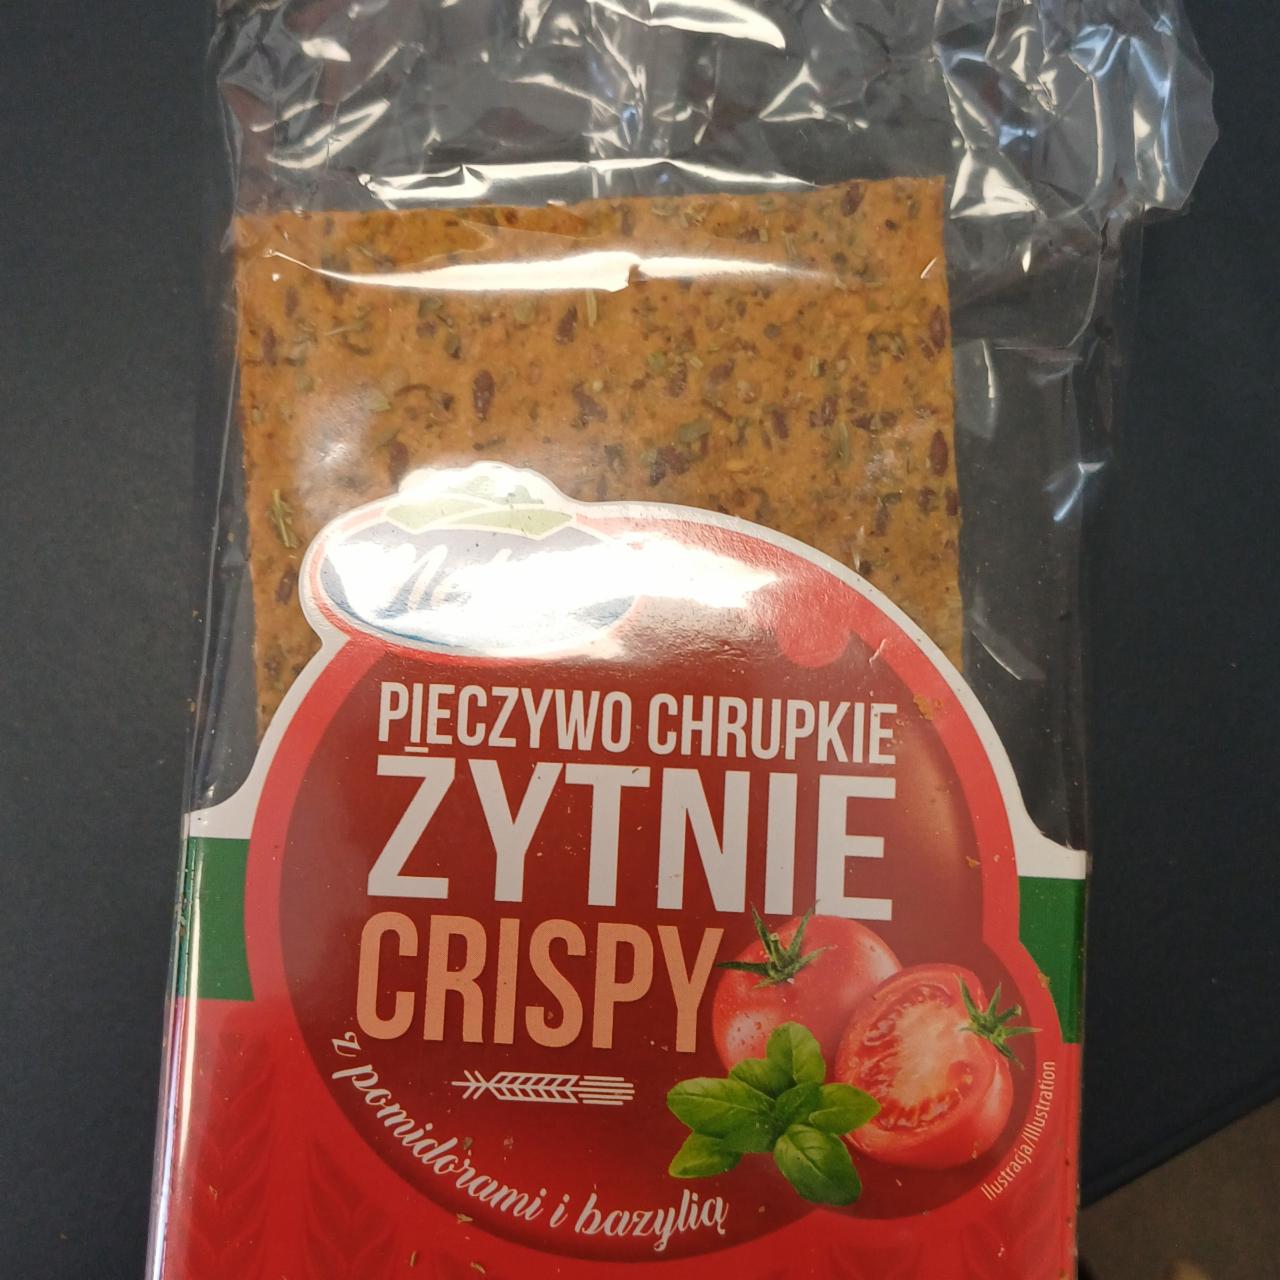 Zdjęcia - Pieczywo chrupkie Crispy żytnie z pomidorami i bazylią Melvit